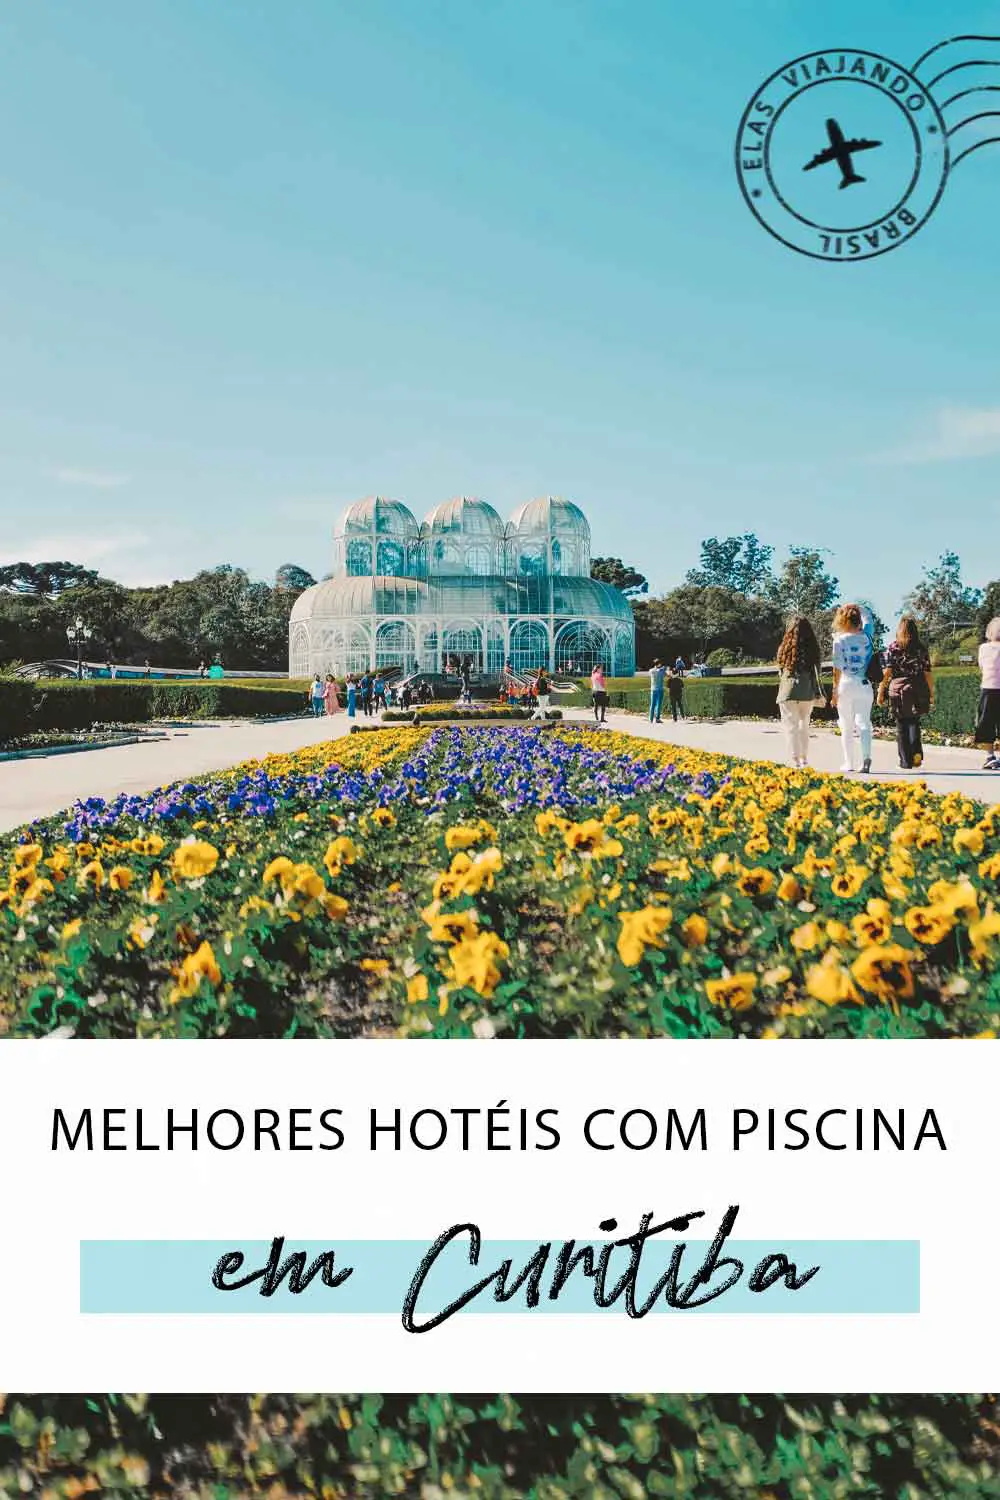 Melhores hotéis com piscina em Curitiba